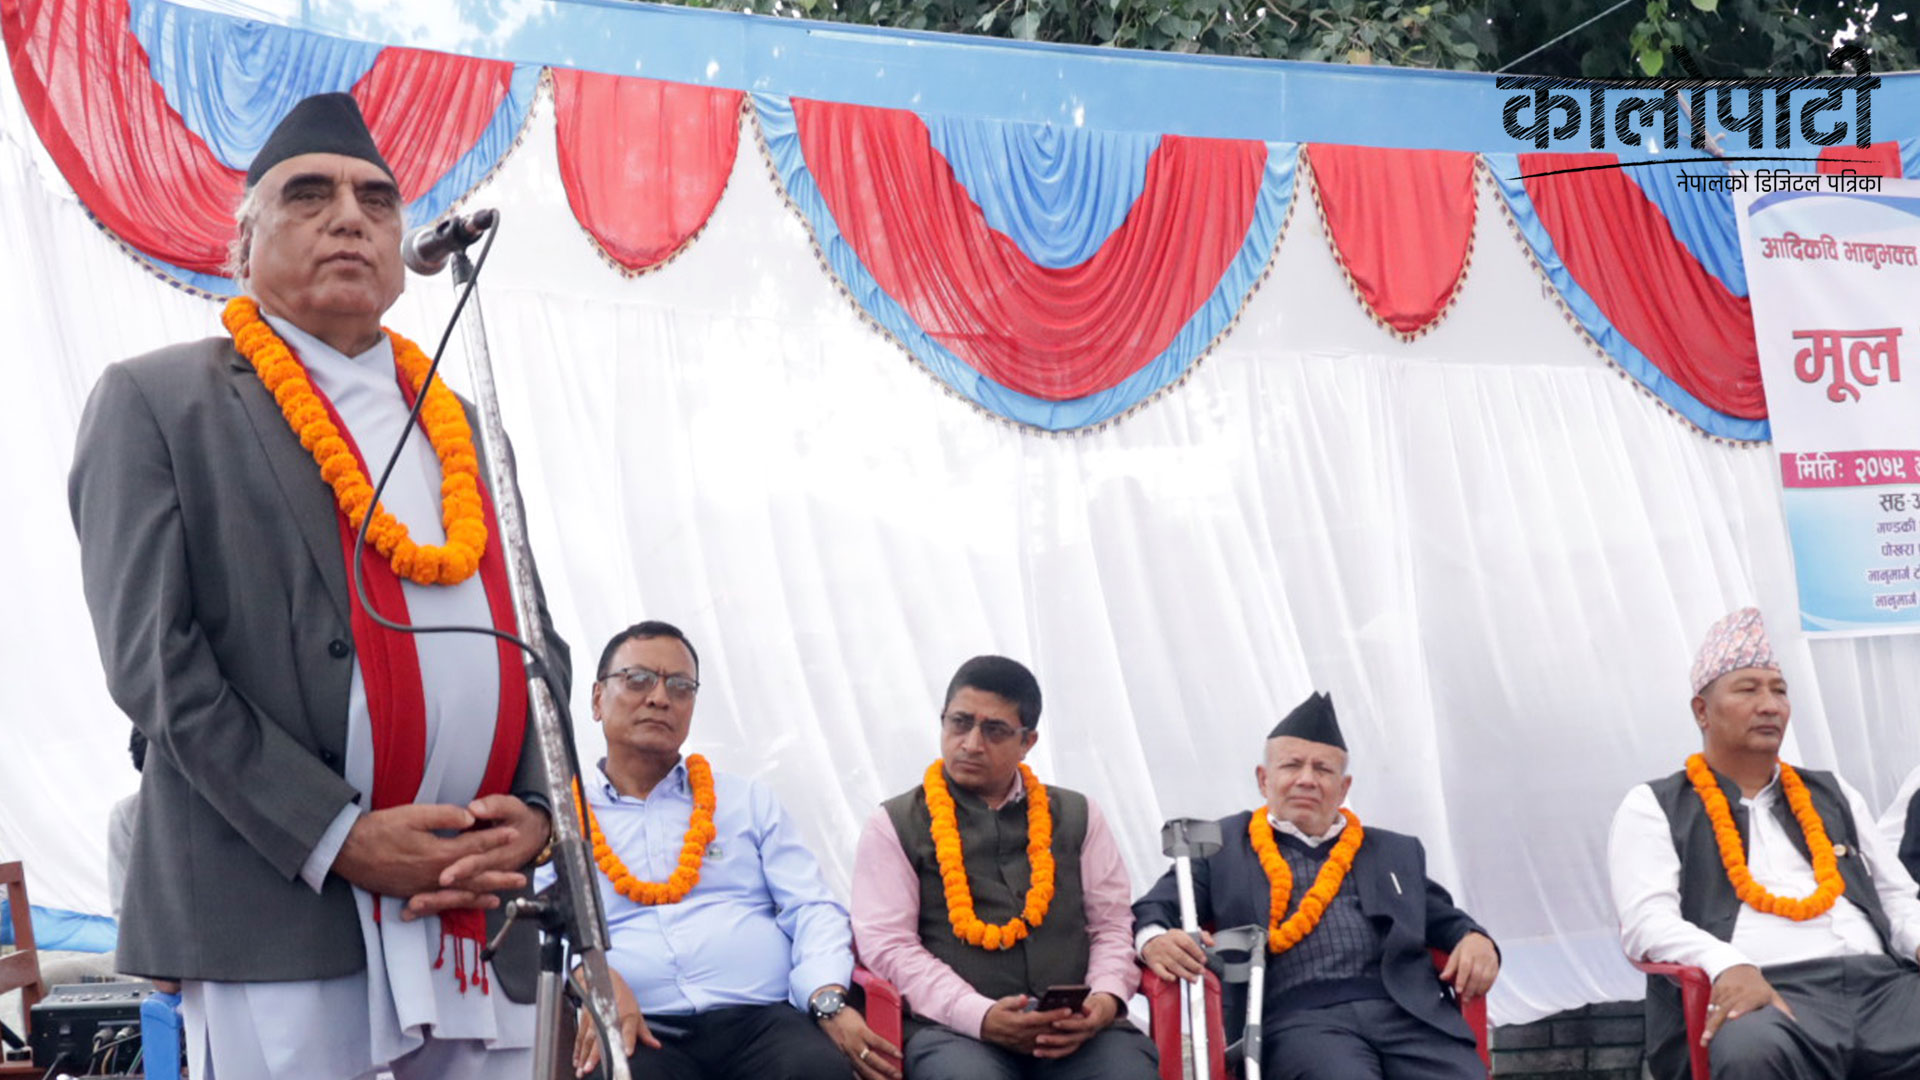 ‘नेपाली भाषाको एकीकरणमा आदिकविको योगदान महत्वपूर्ण छ’ : मुख्यमन्त्री पोखरेल